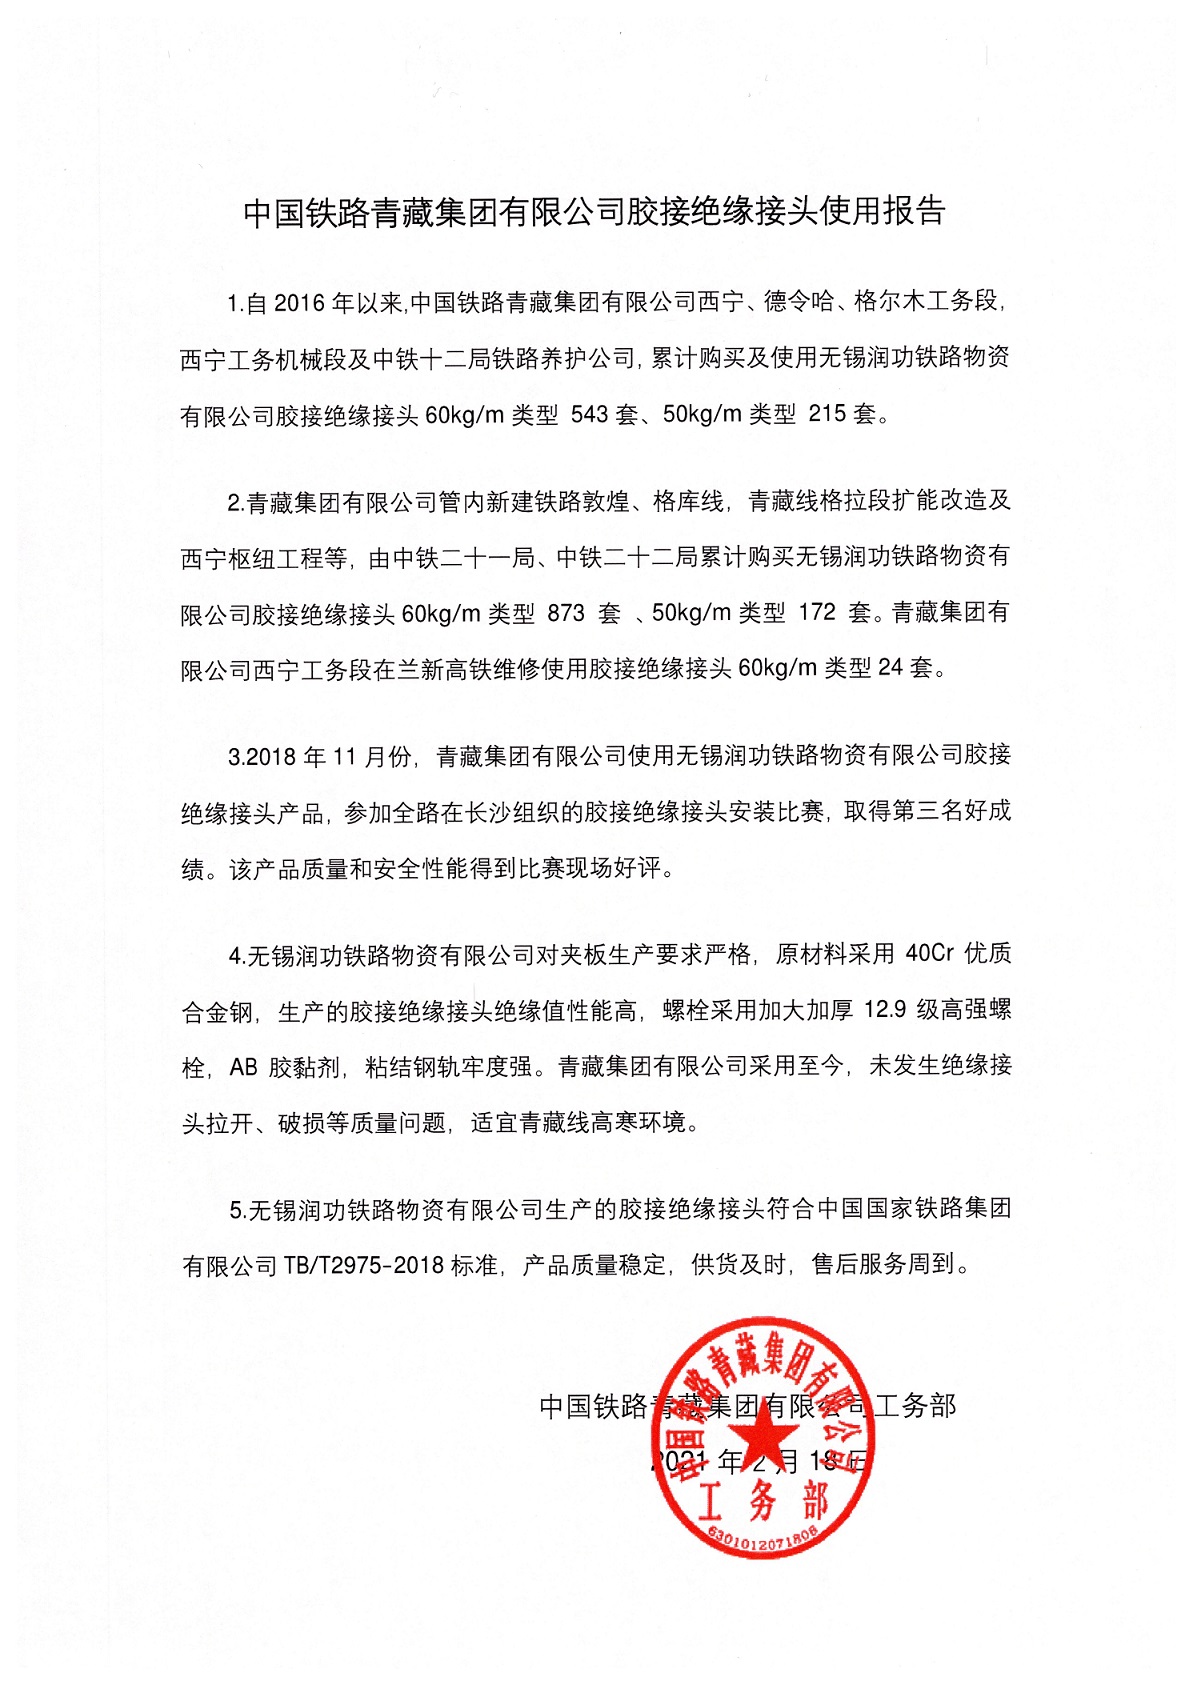 中国铁路青藏集团有限公司胶结绝缘接头使用报告